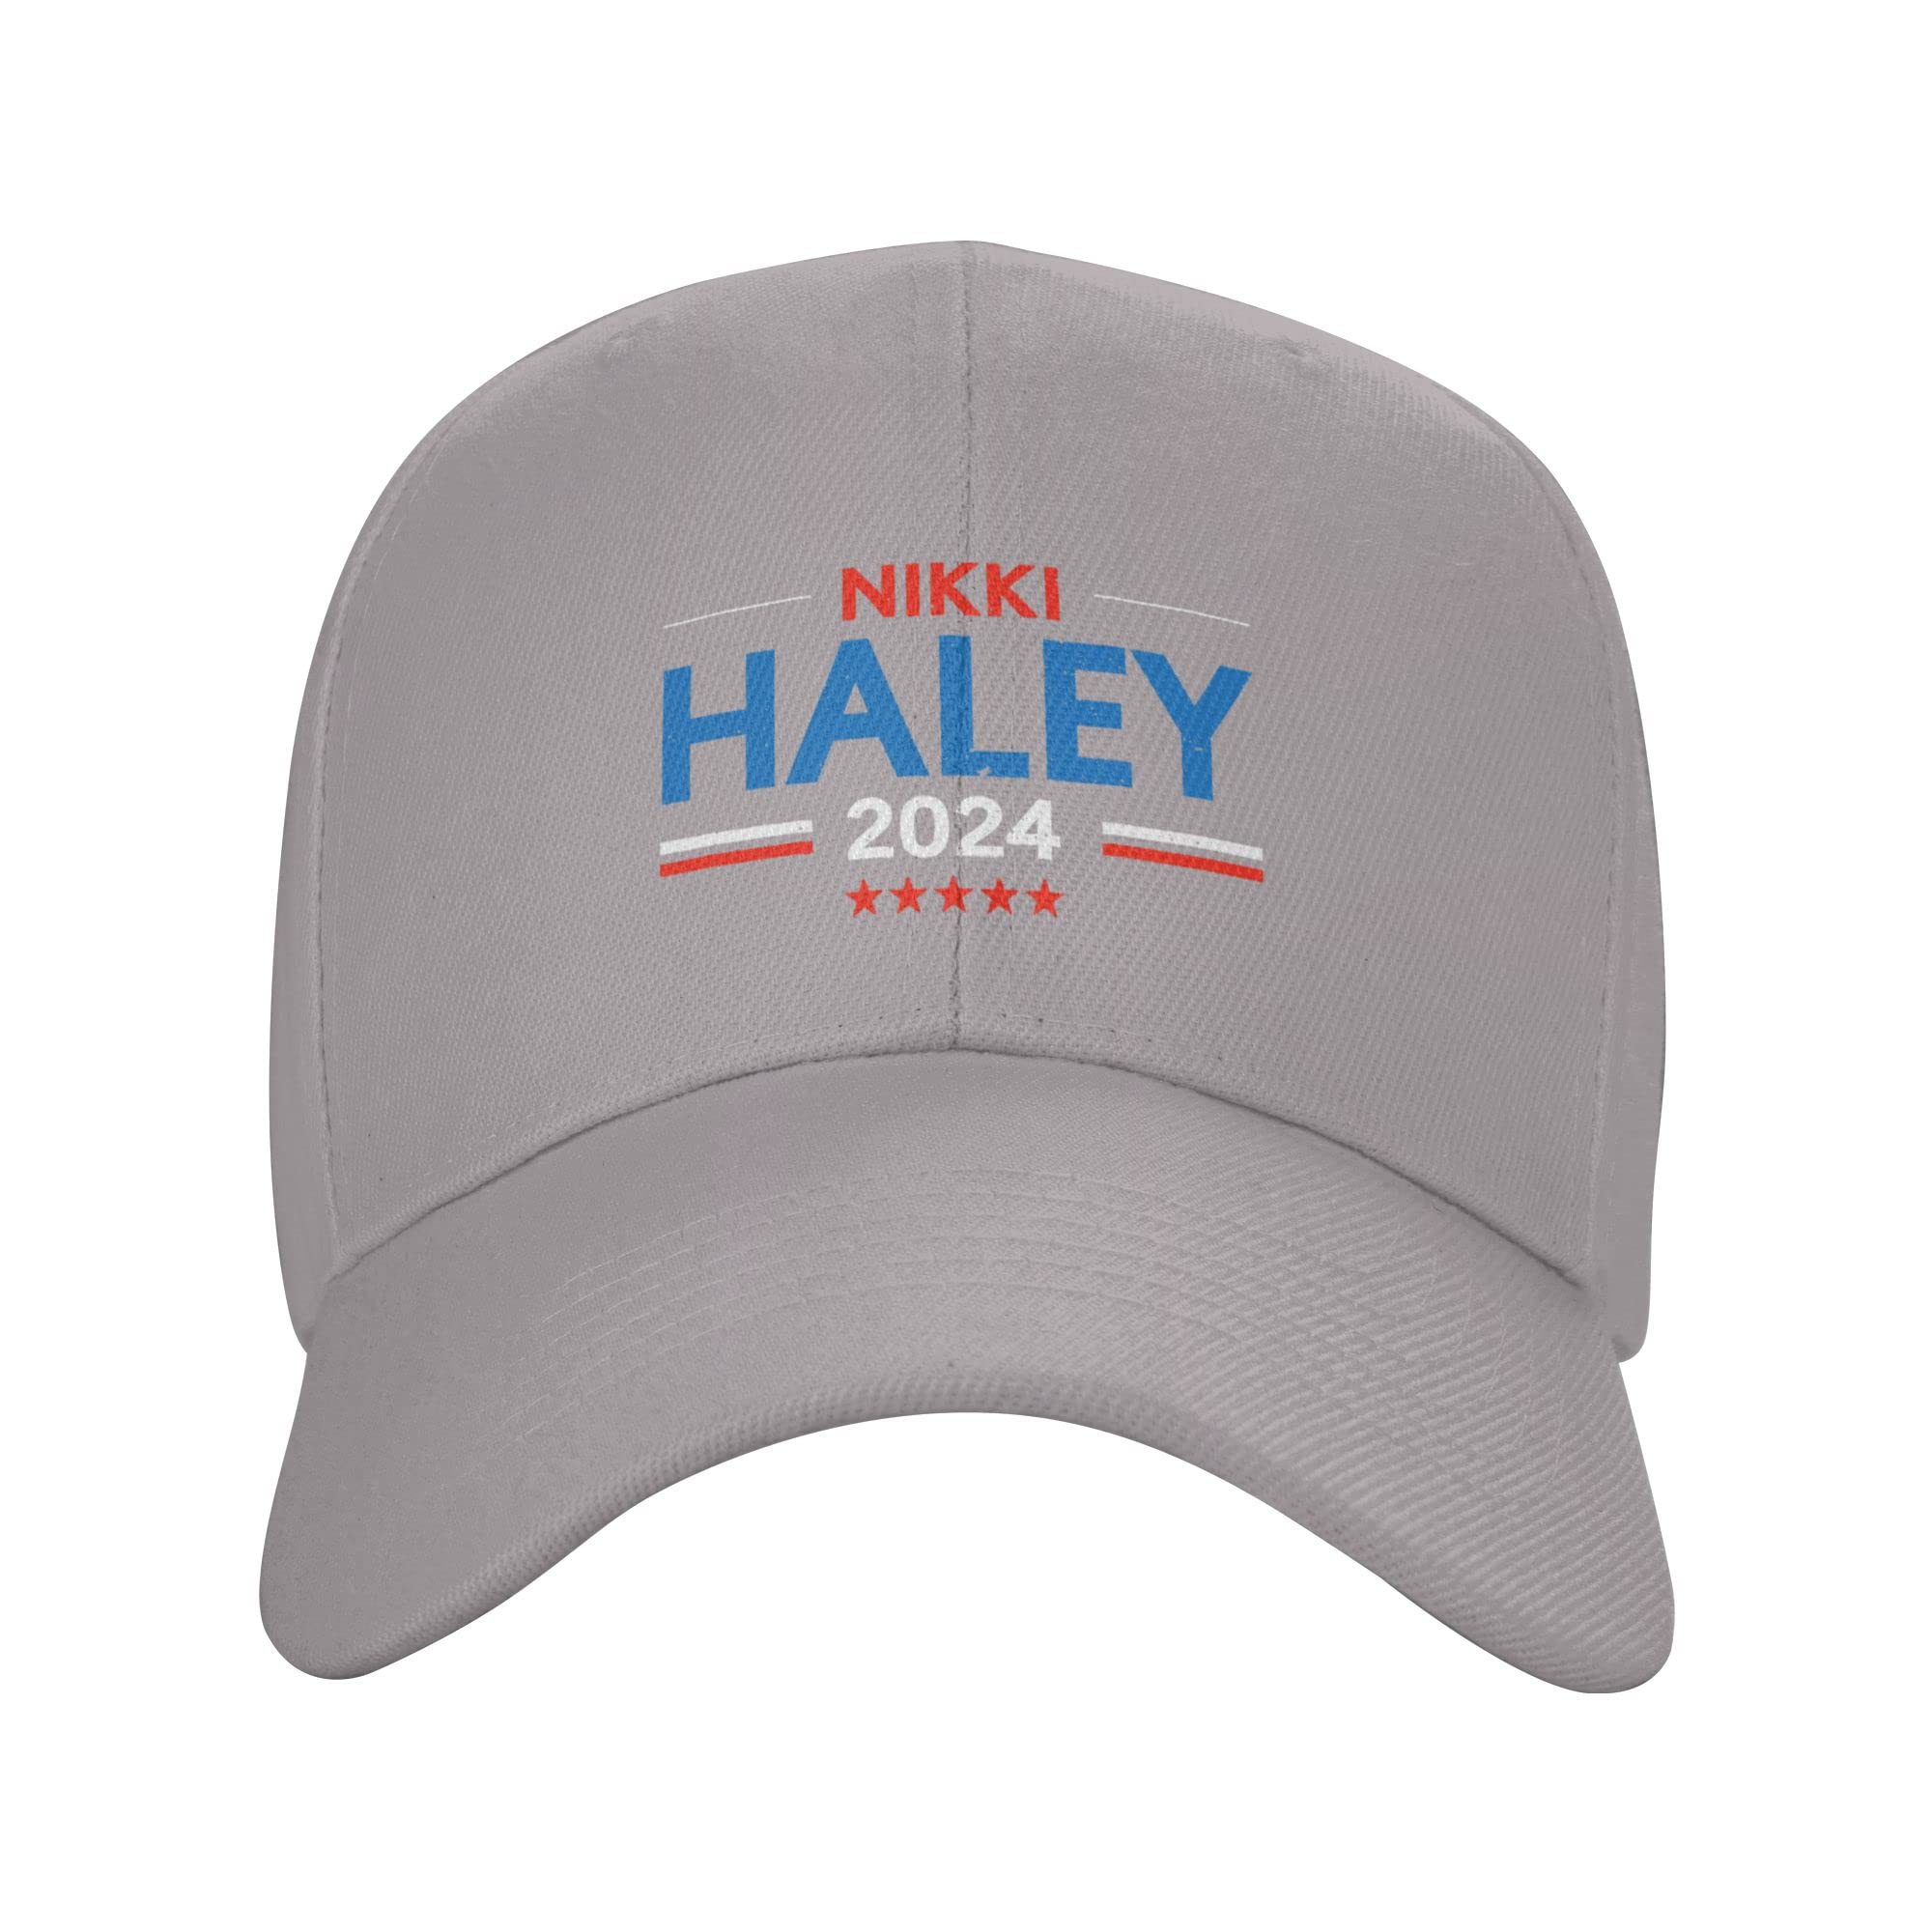 Mua Klazza Nikki Haley 2024 Hat Nikki Haley President for President